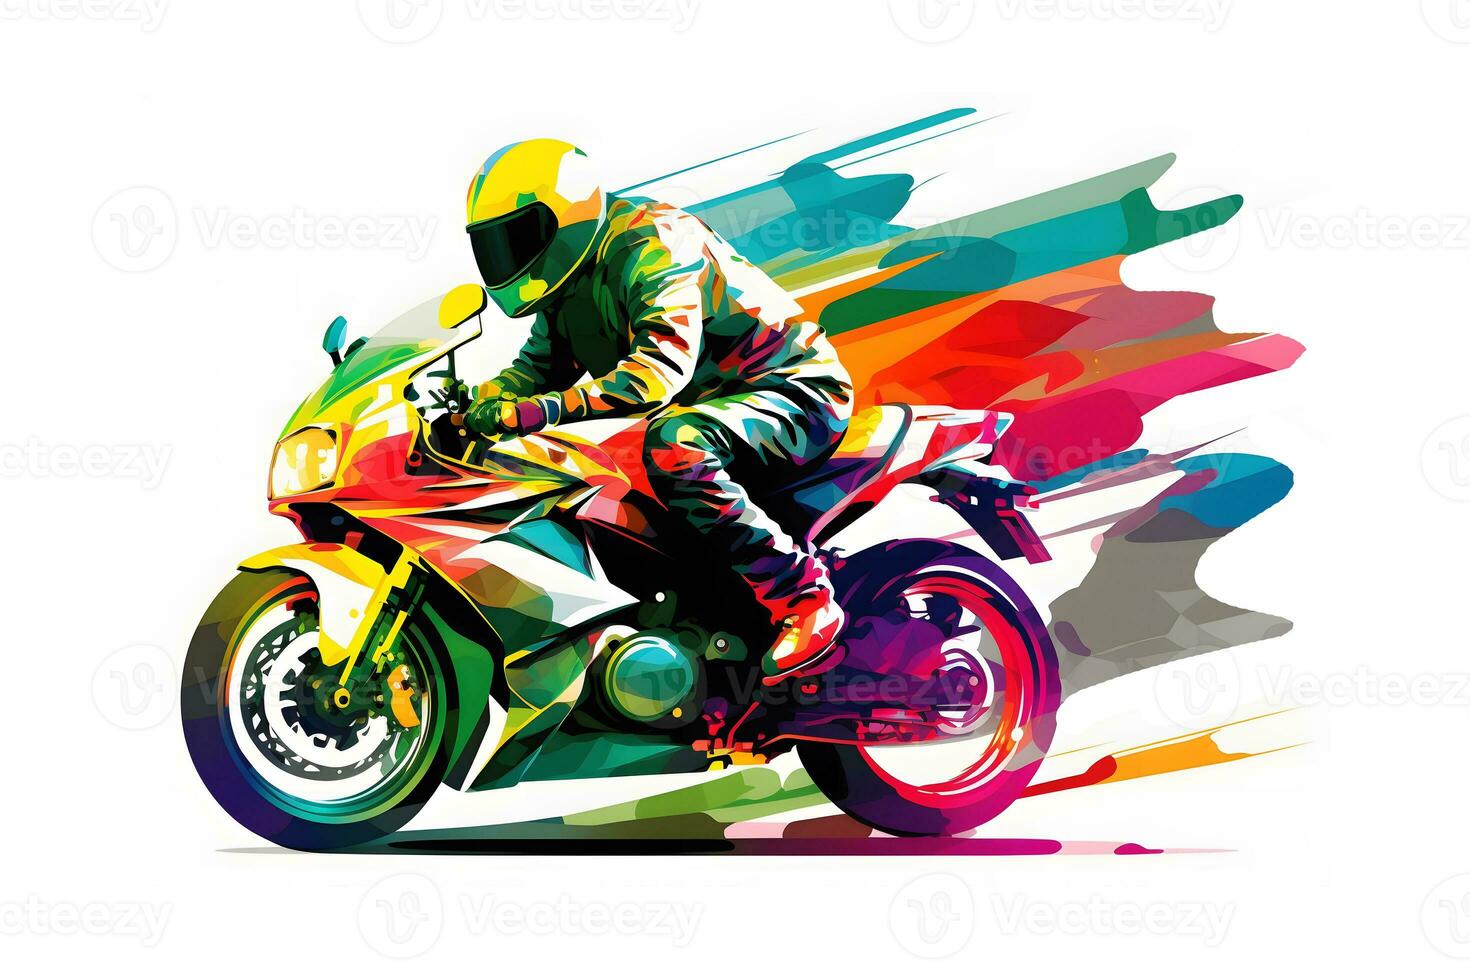 klistermärke av cyklist på sport motorcykel i vattenfärg stil på vit bakgrund. neuralt nätverk genererad konst foto